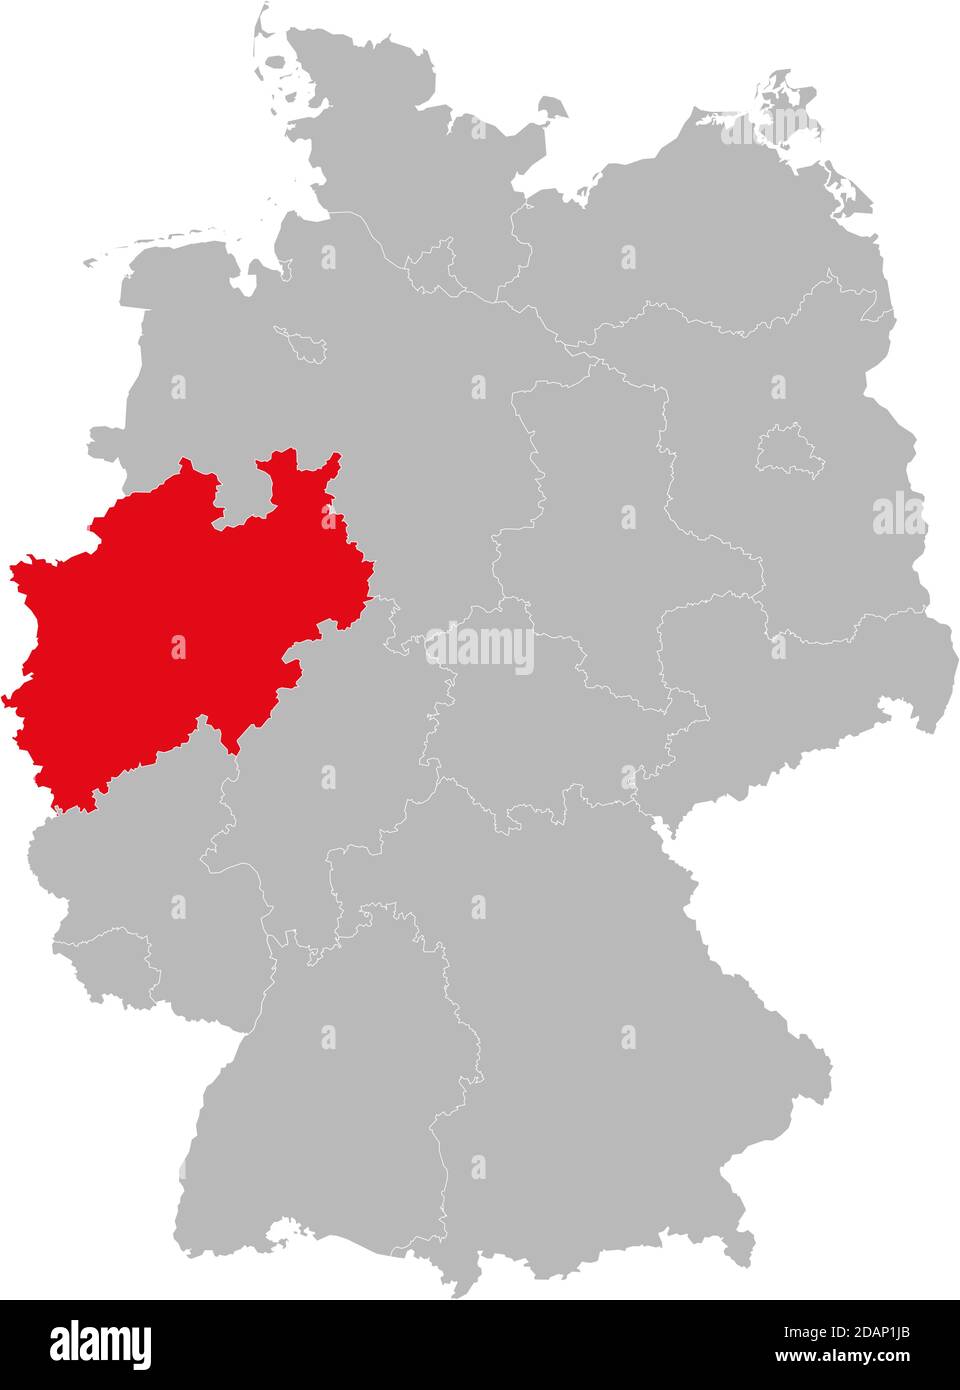 Etat de Rhénanie-du-Nord-Westphalie isolé sur la carte de l'Allemagne. Concepts et antécédents professionnels. Illustration de Vecteur